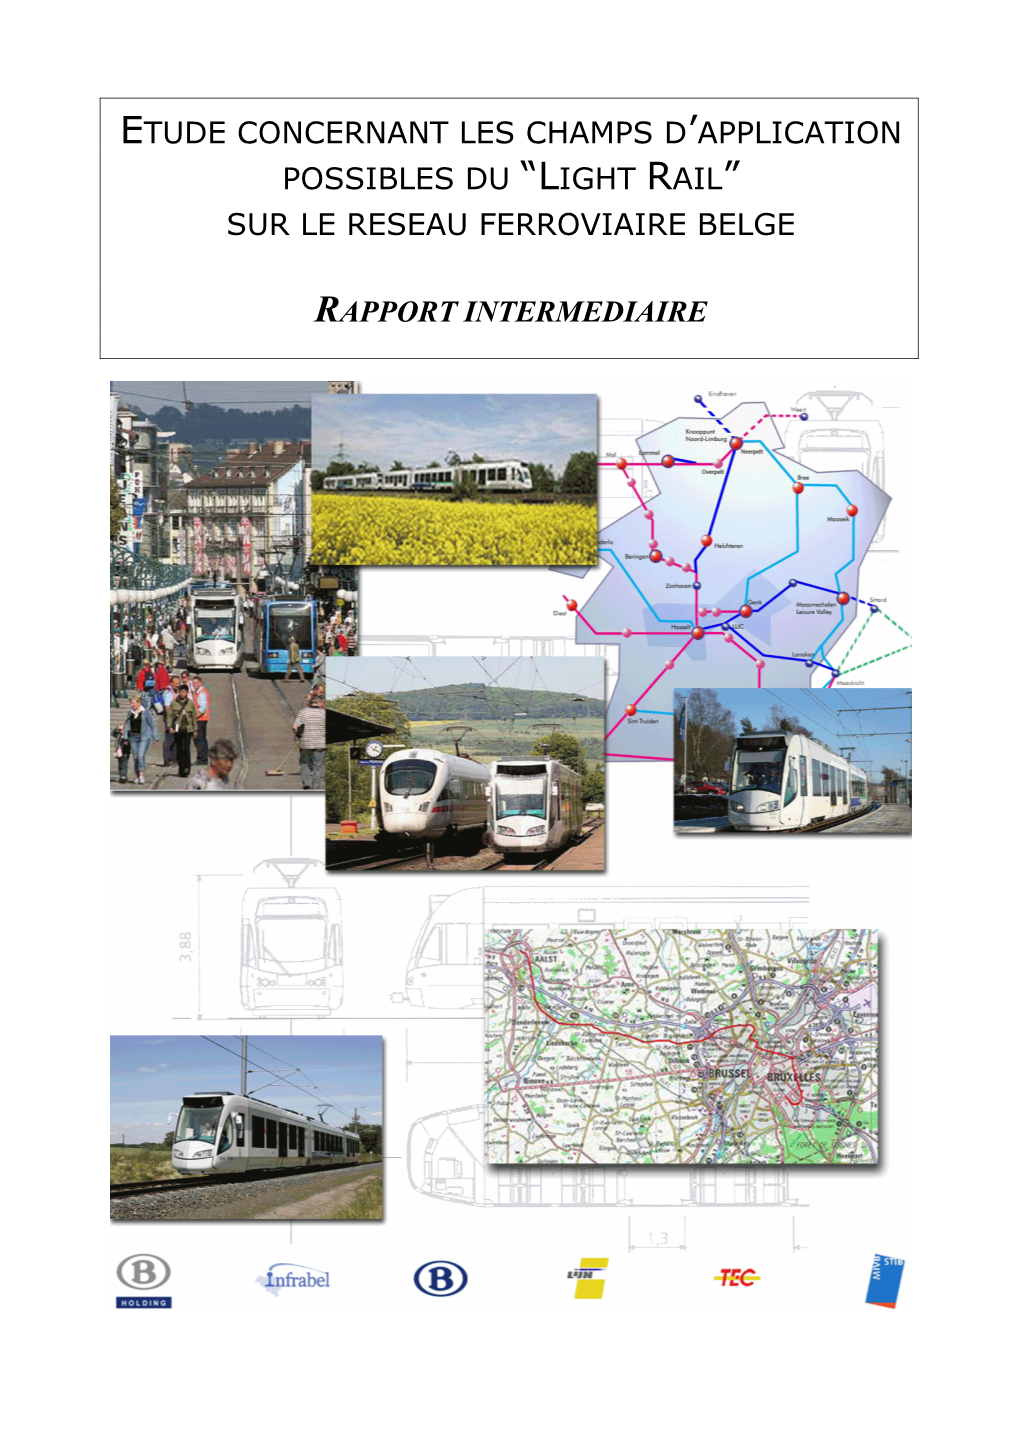 Etude Concernant Les Champs D'application Possibles Du “Light Rail” Sur Le Reseau Ferroviaire Belge Rapport Intermediaire